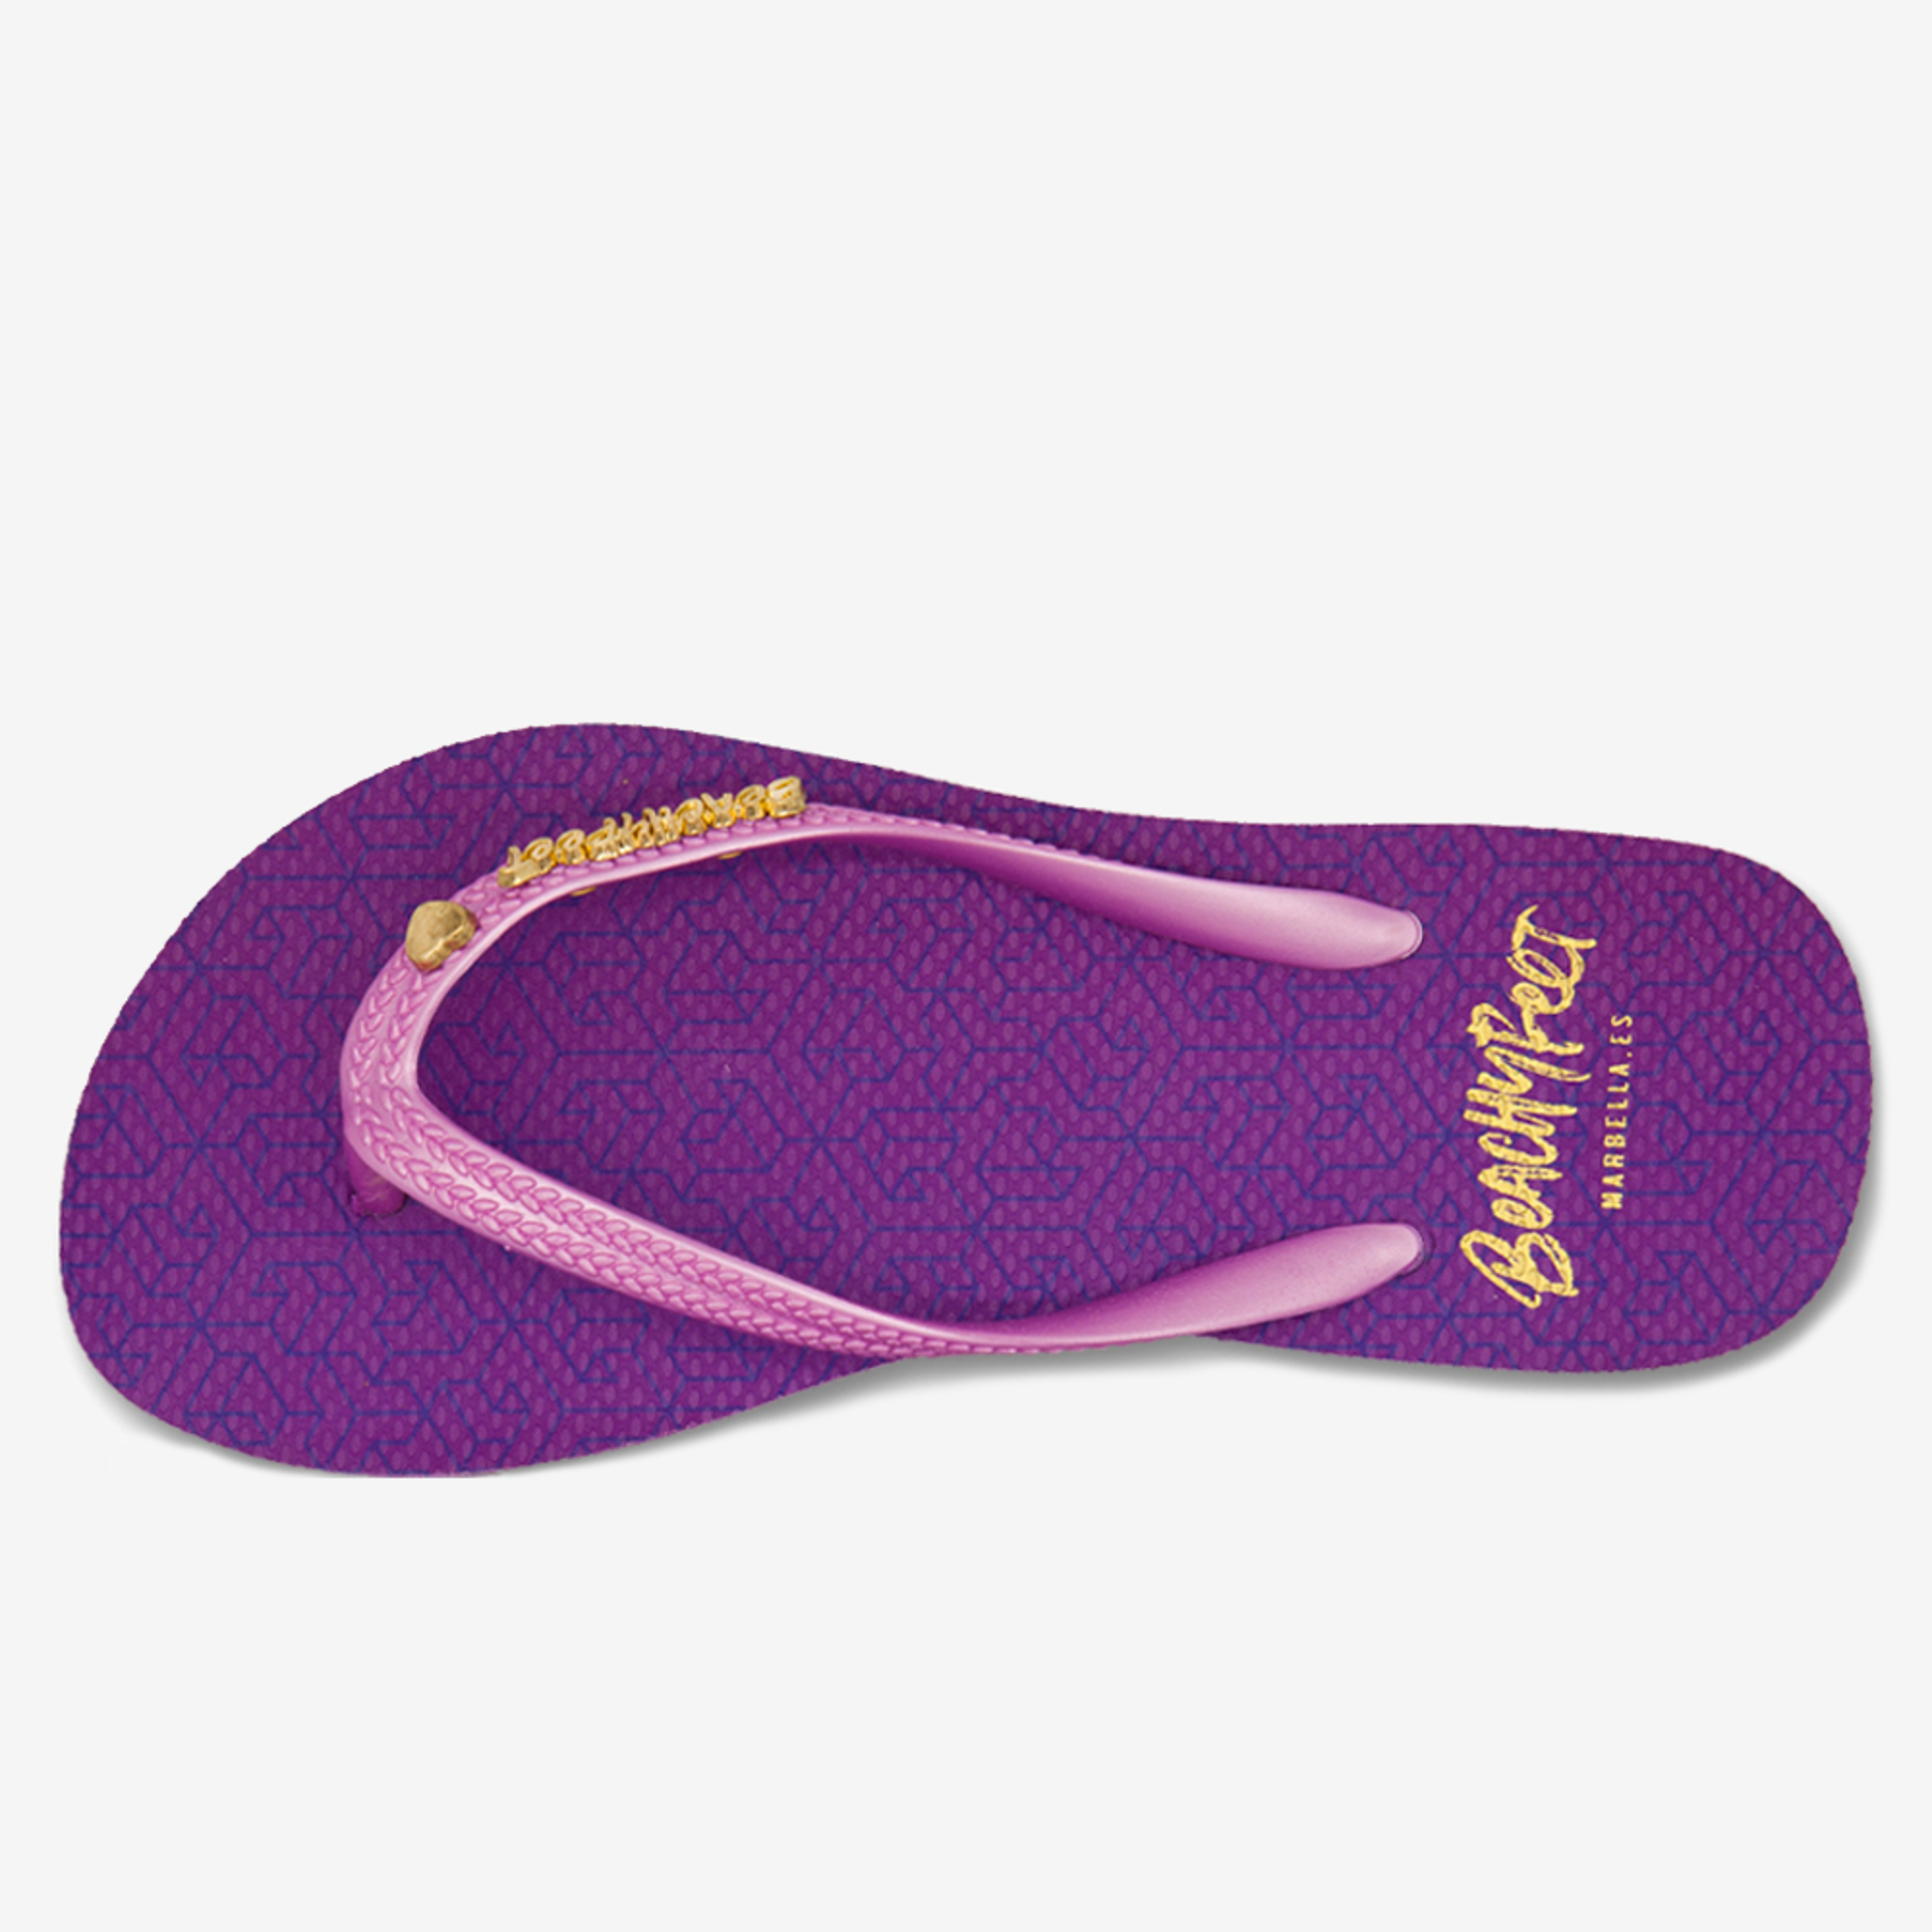 Chanclas  Beachyfeet Modelo Pasion Purpura - purpura - 